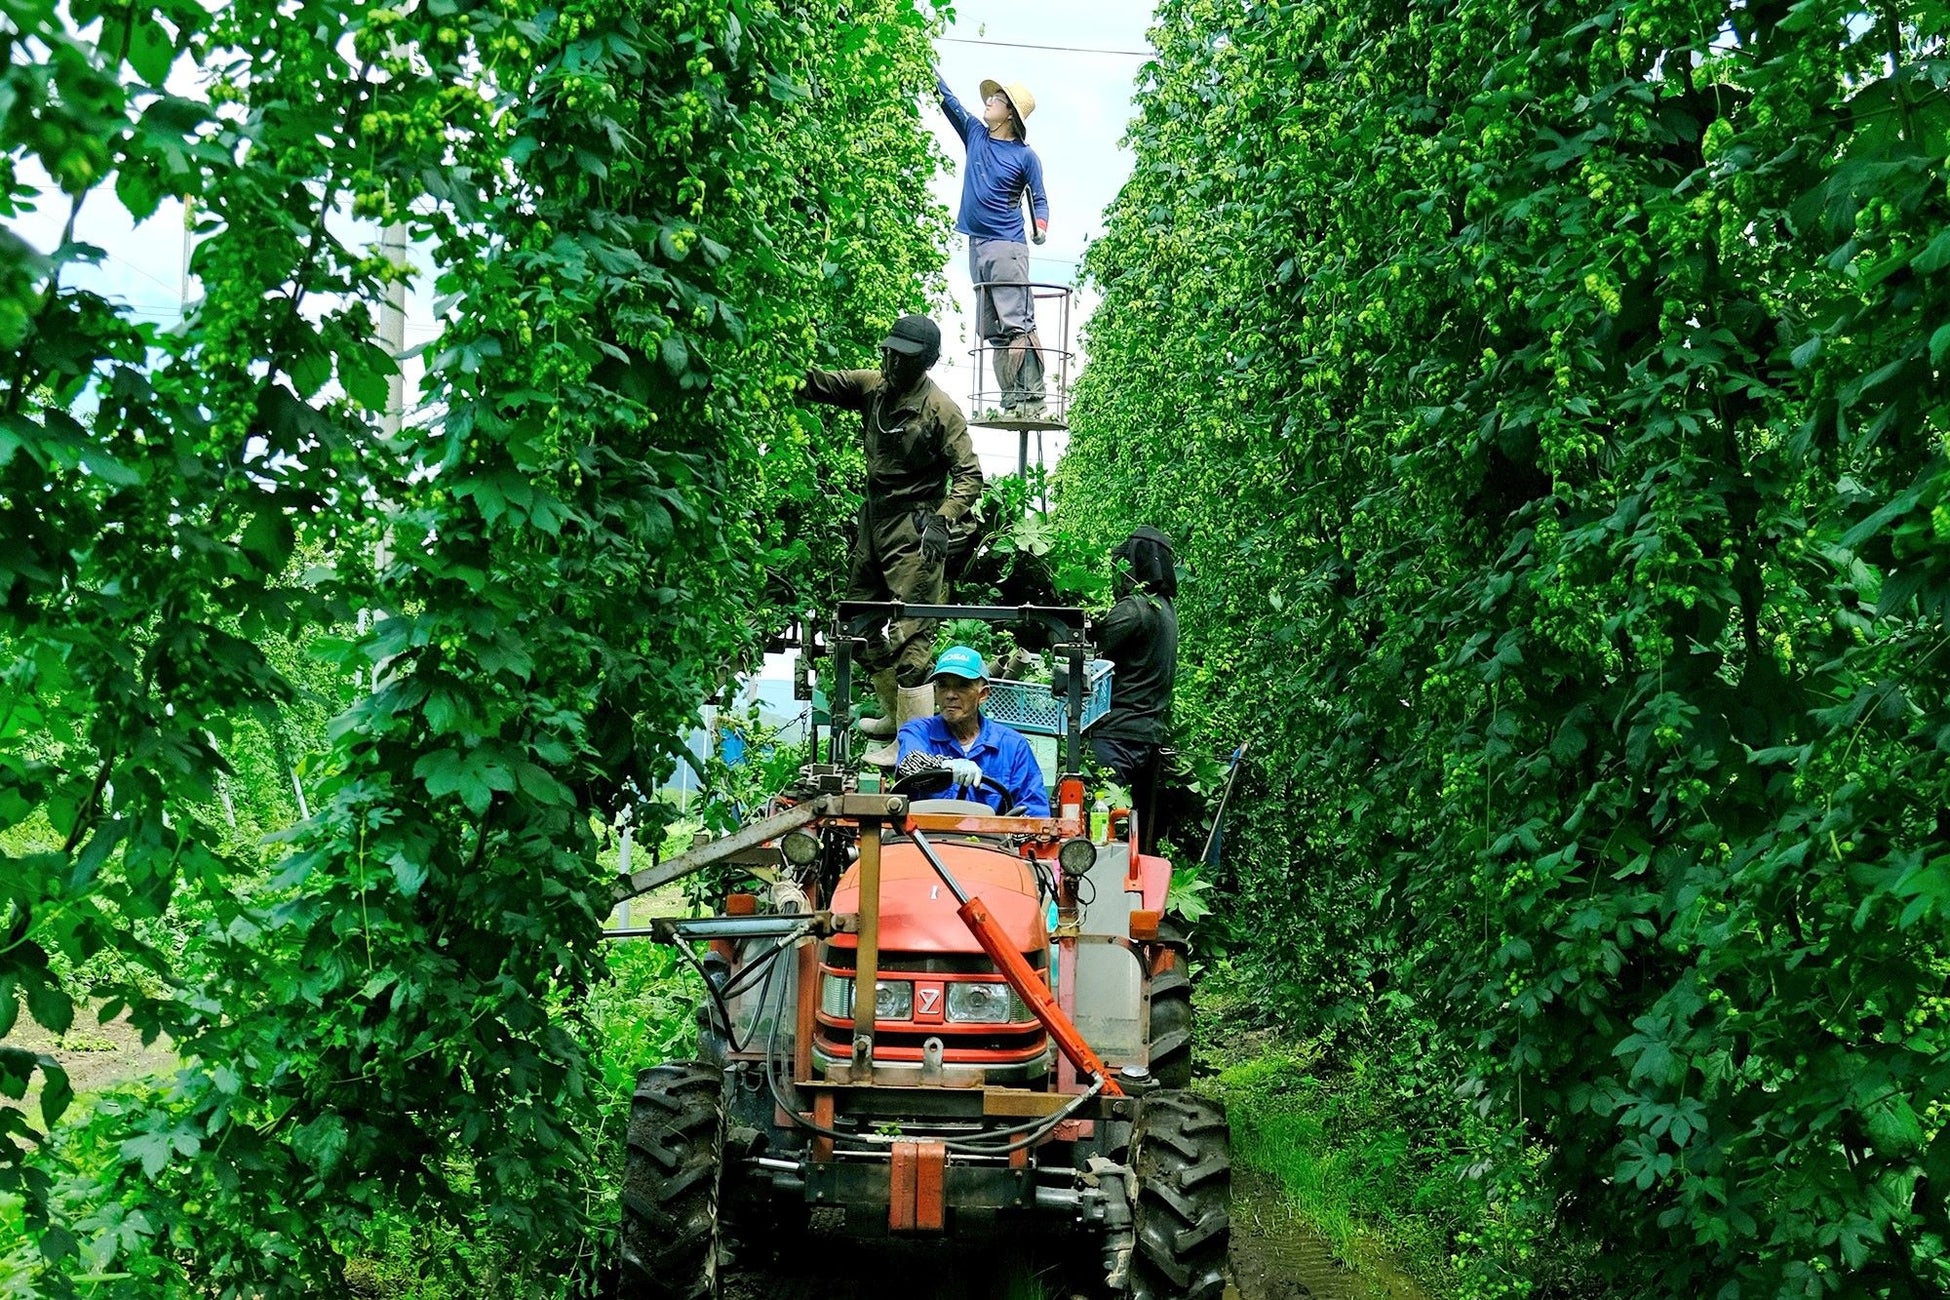 ホップの生産量日本一の岩手県遠野市　醸造しているビールには遠野産ホップを積極的に使用しています